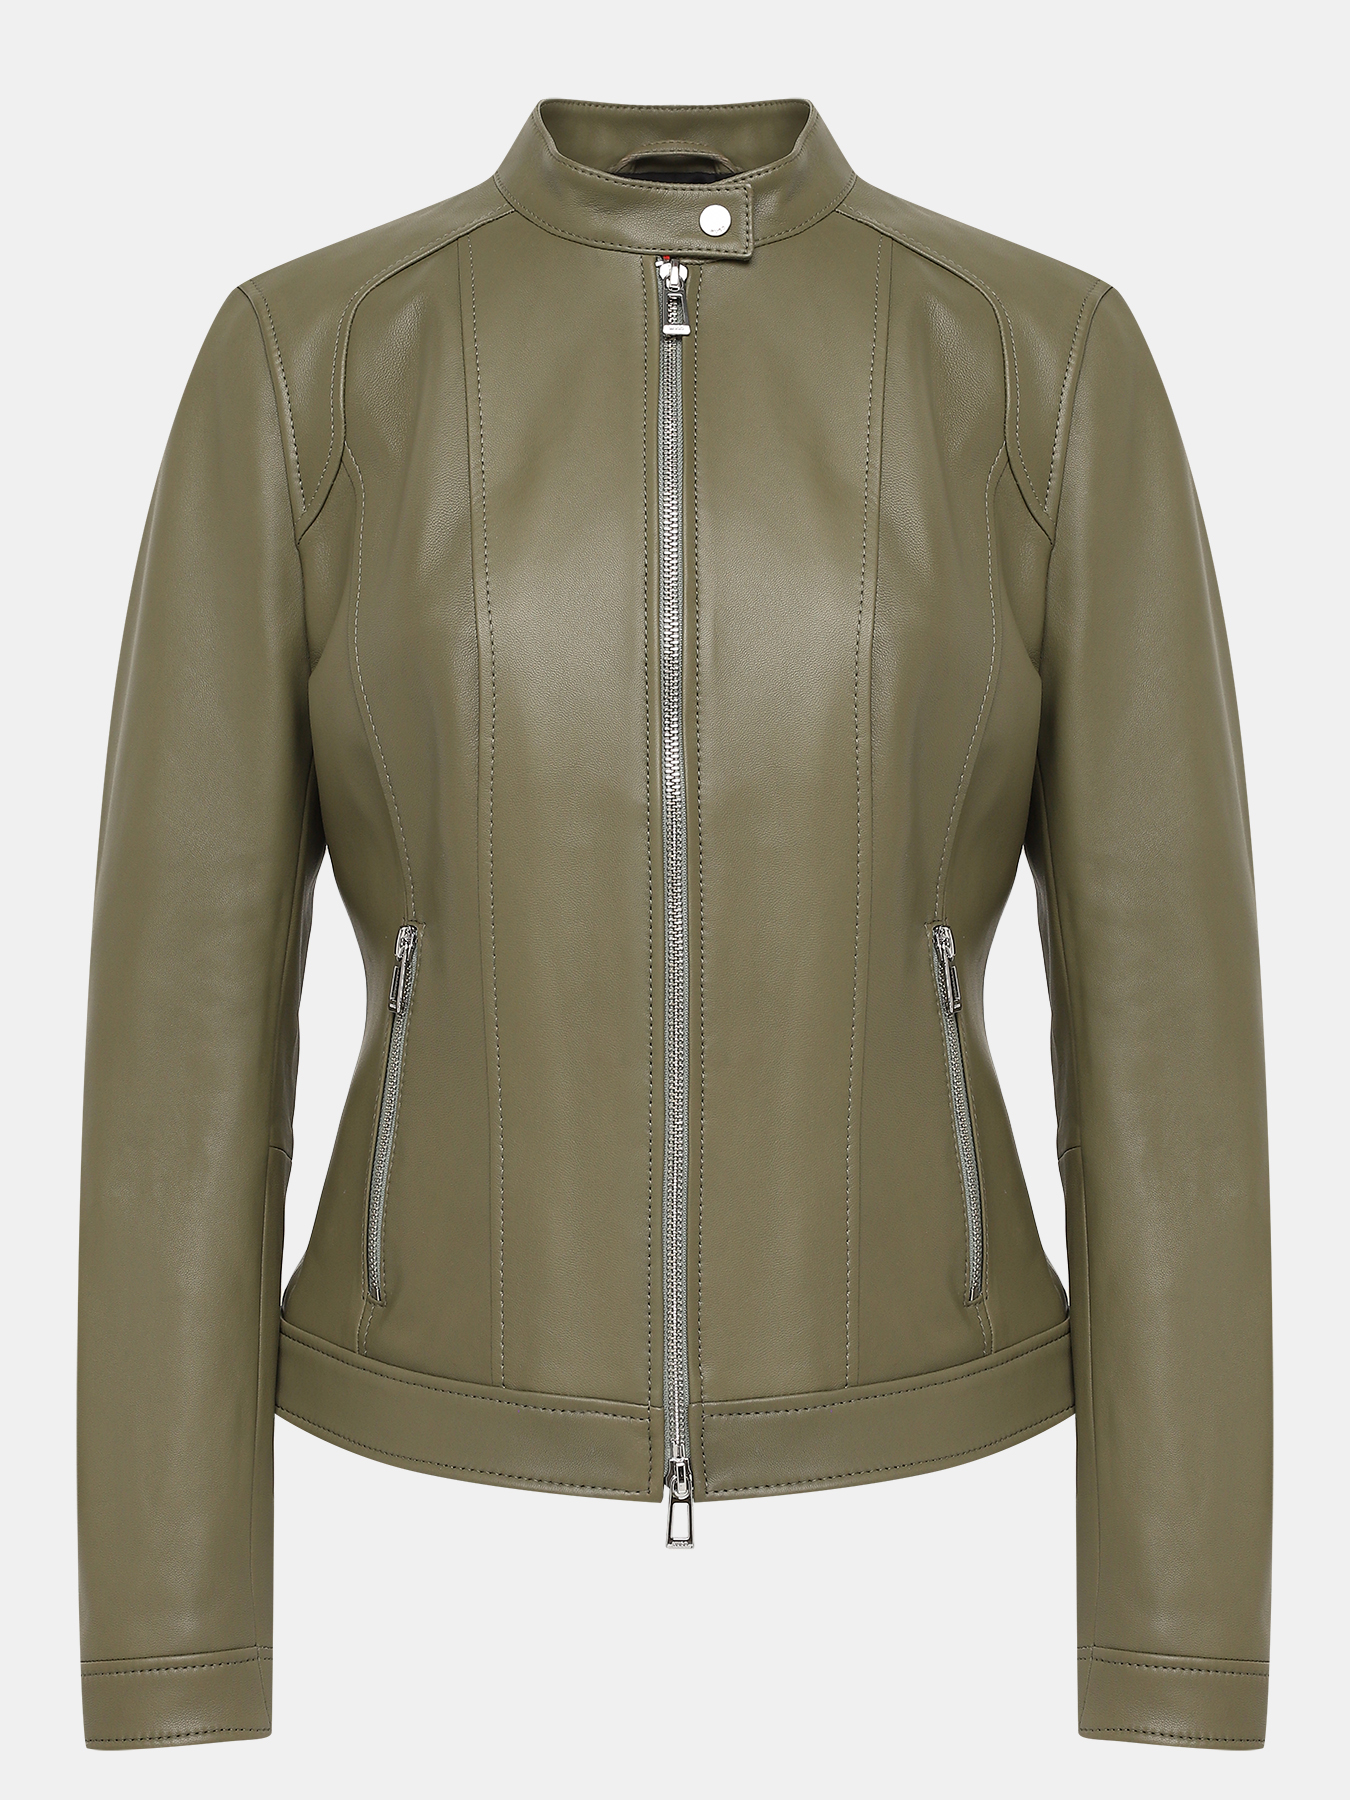 Кожаная куртка Ladias HUGO 417707-042, цвет хаки, размер 42-44